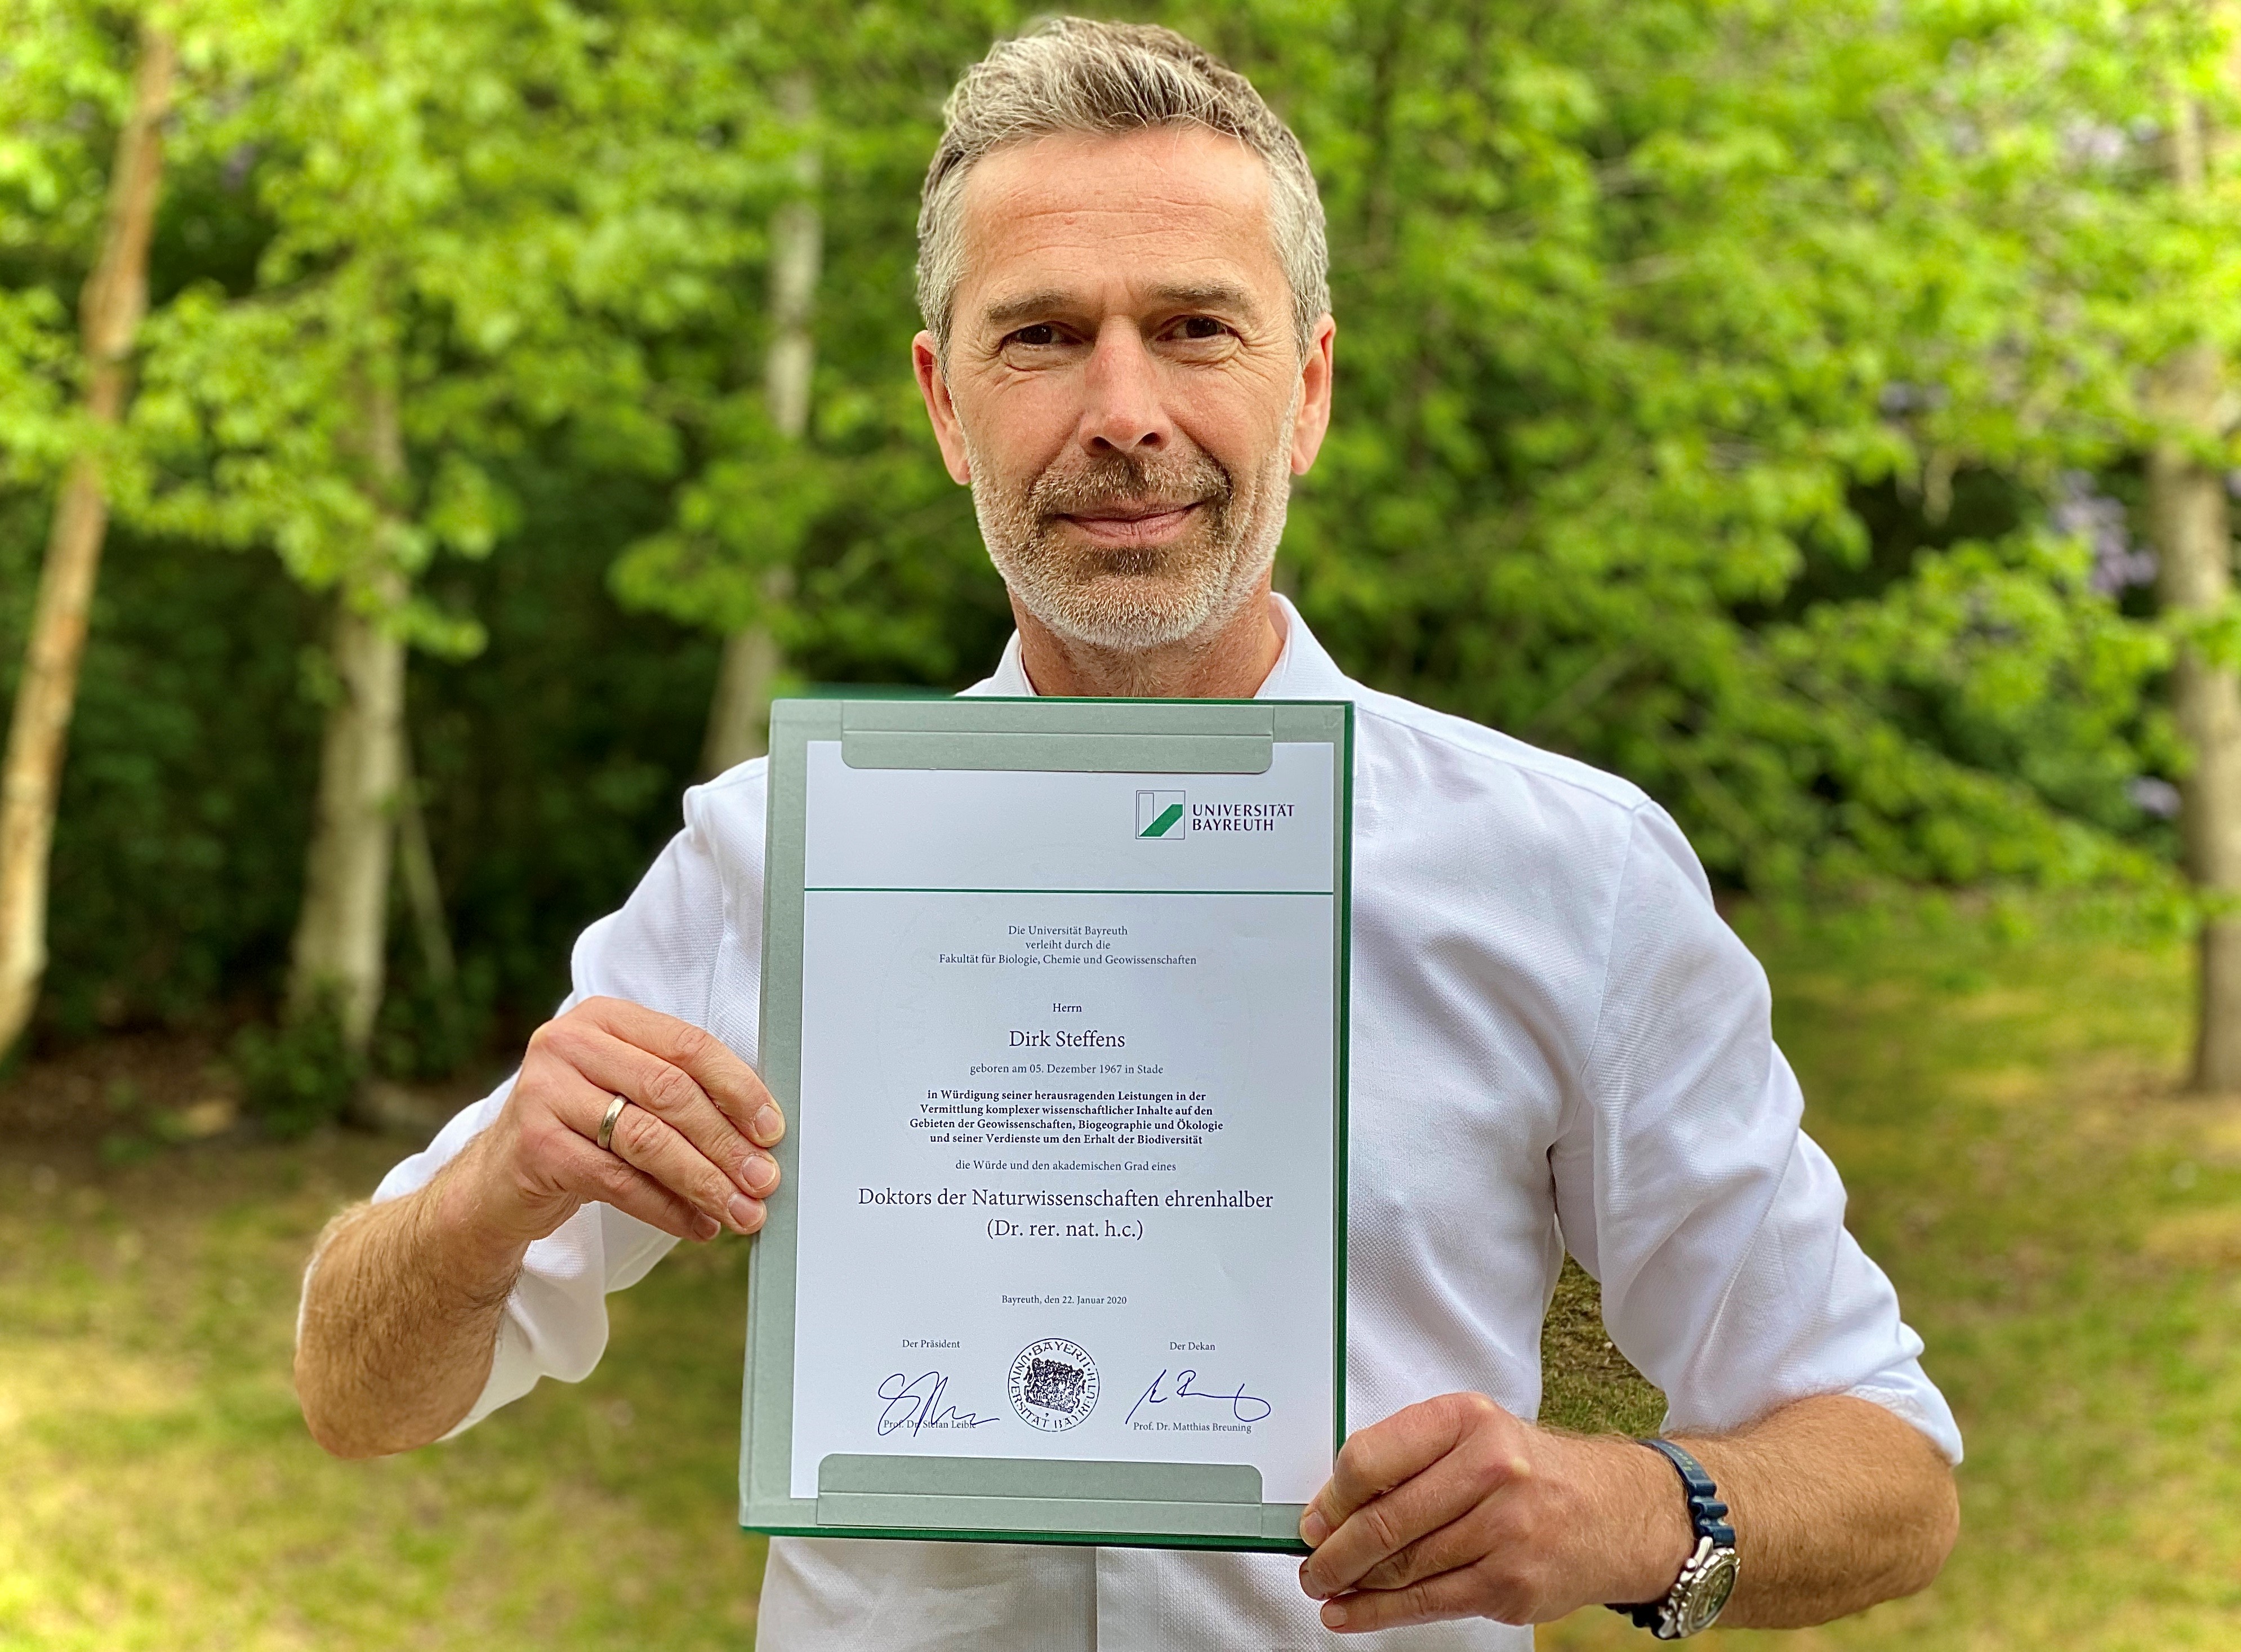 Dirk Steffens präsentiert die Urkunde zur Verleihung der Ehrendoktorwürde der Universität Bayreuth